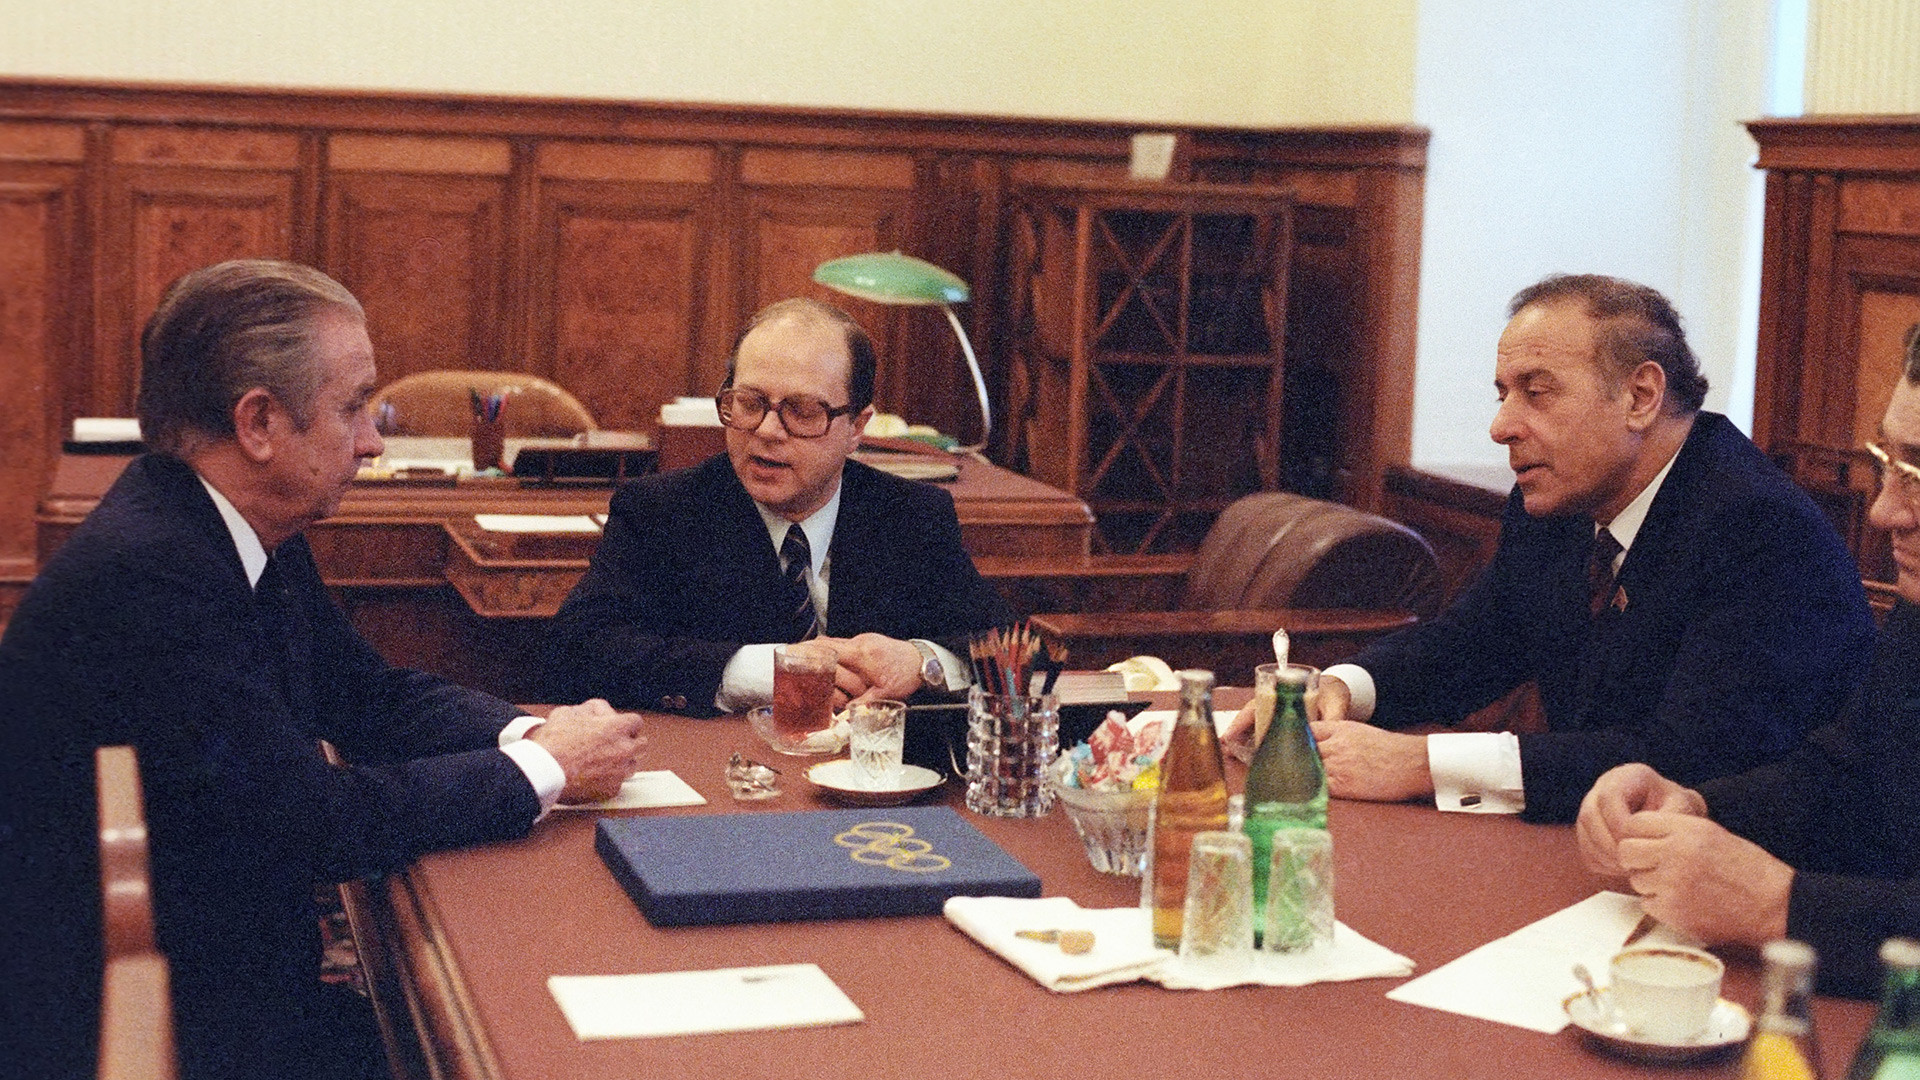 Първият зам.-председател на Съвета на министрите на СССР Гейдар Алиев (вдясно) и президентът на МОК Хуан Антонио Самаранч на среща в Кремъл.